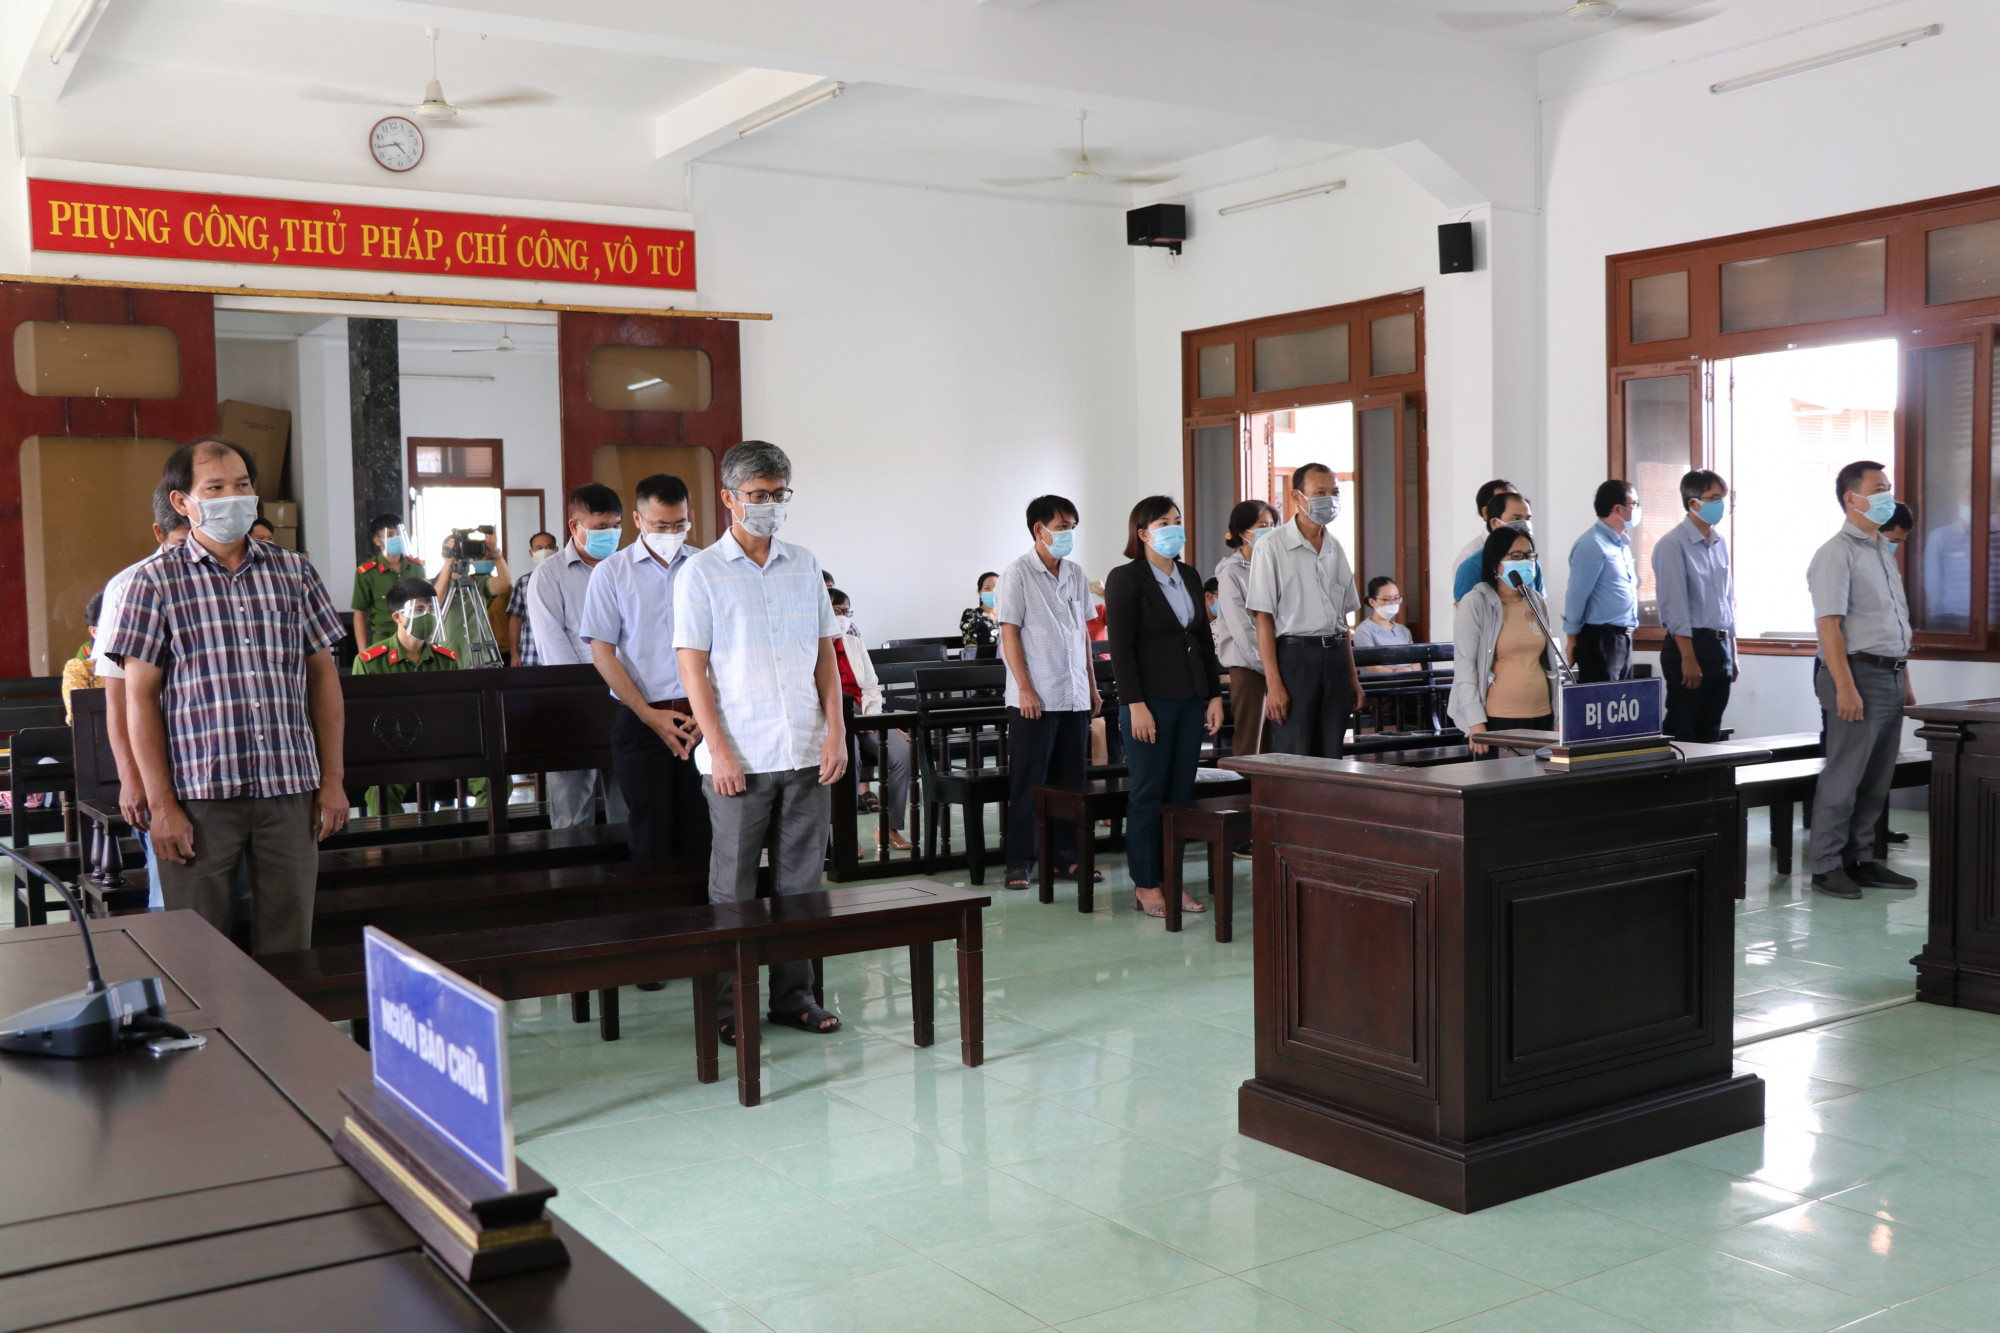 Các bị cáo đưa ra xét xử trọng vụ lộ đề thi trong kỳ thi tuyển công chức năm 2017-2018 tỉnh Phú Yên